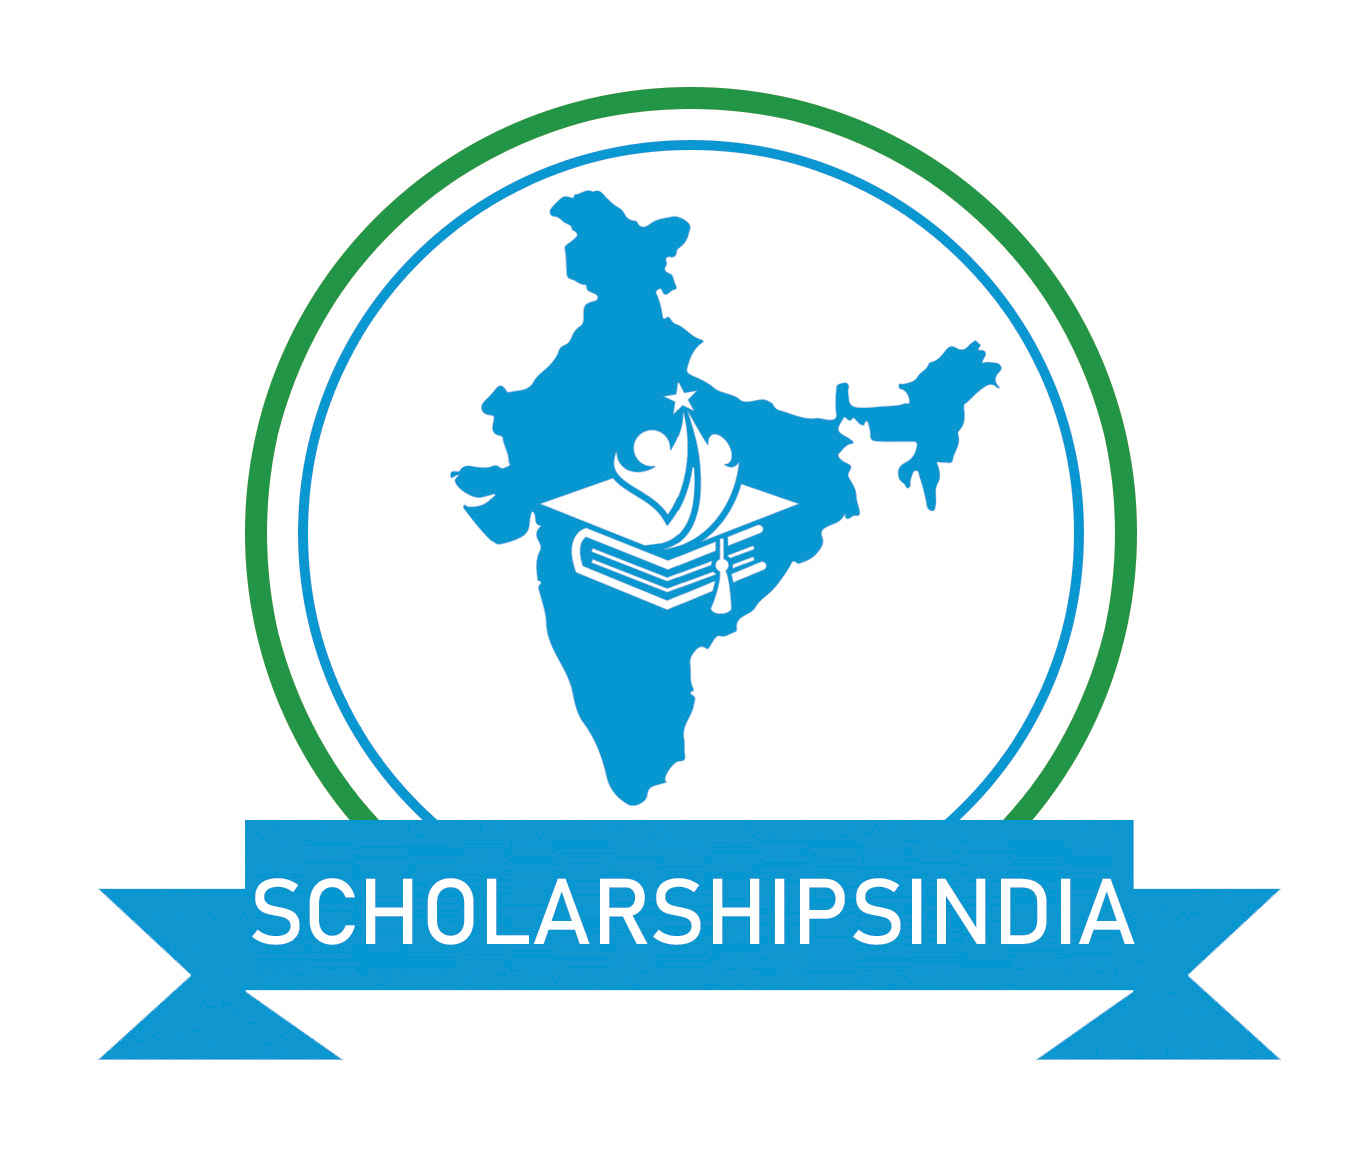 scholarshipindia